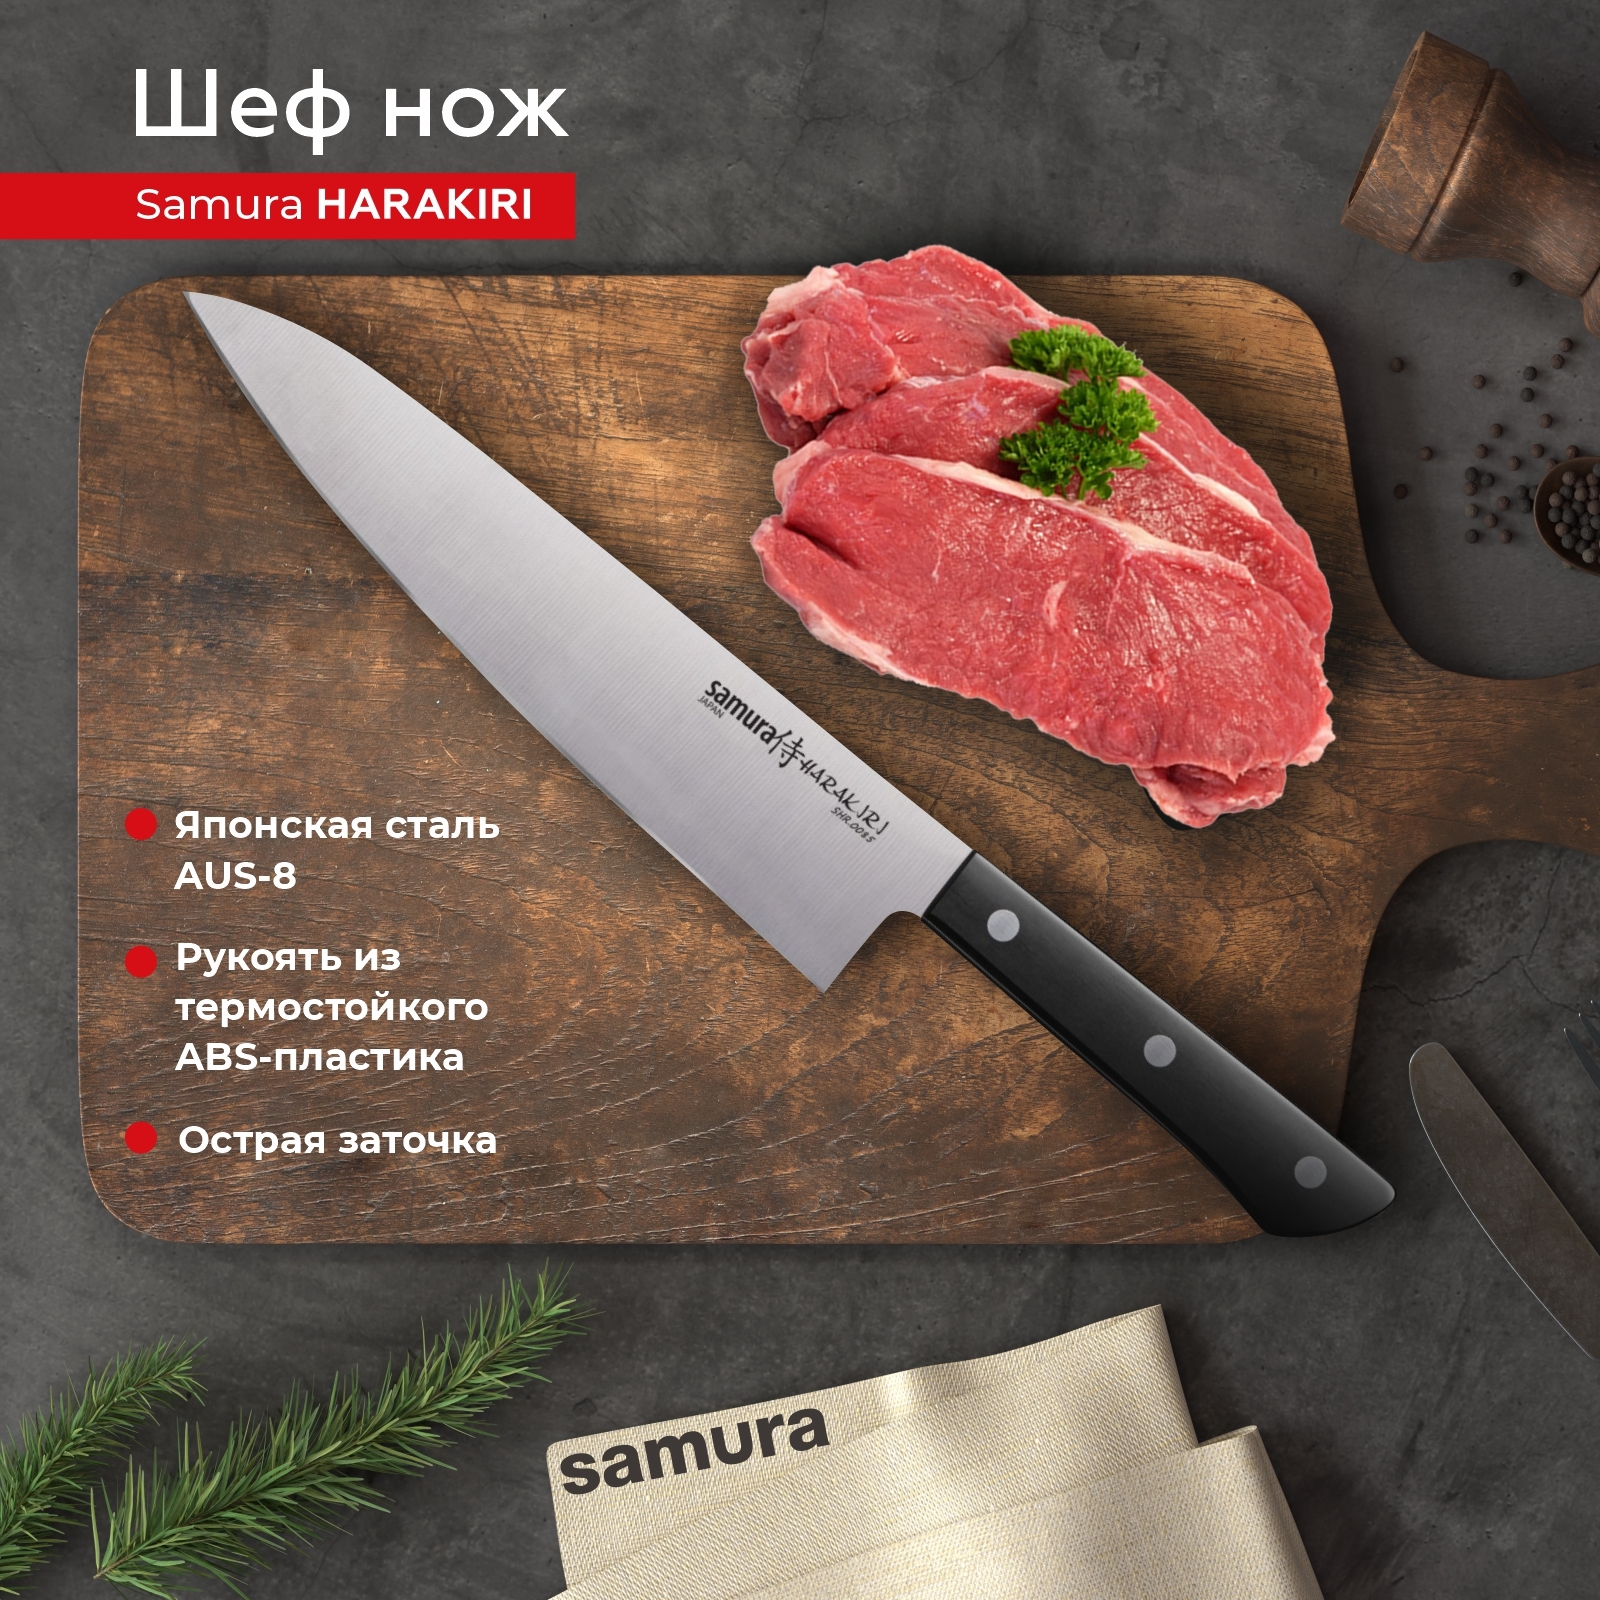 Кухонные ножи Samura (Самура) –  нож для кухни на  по низкой цене